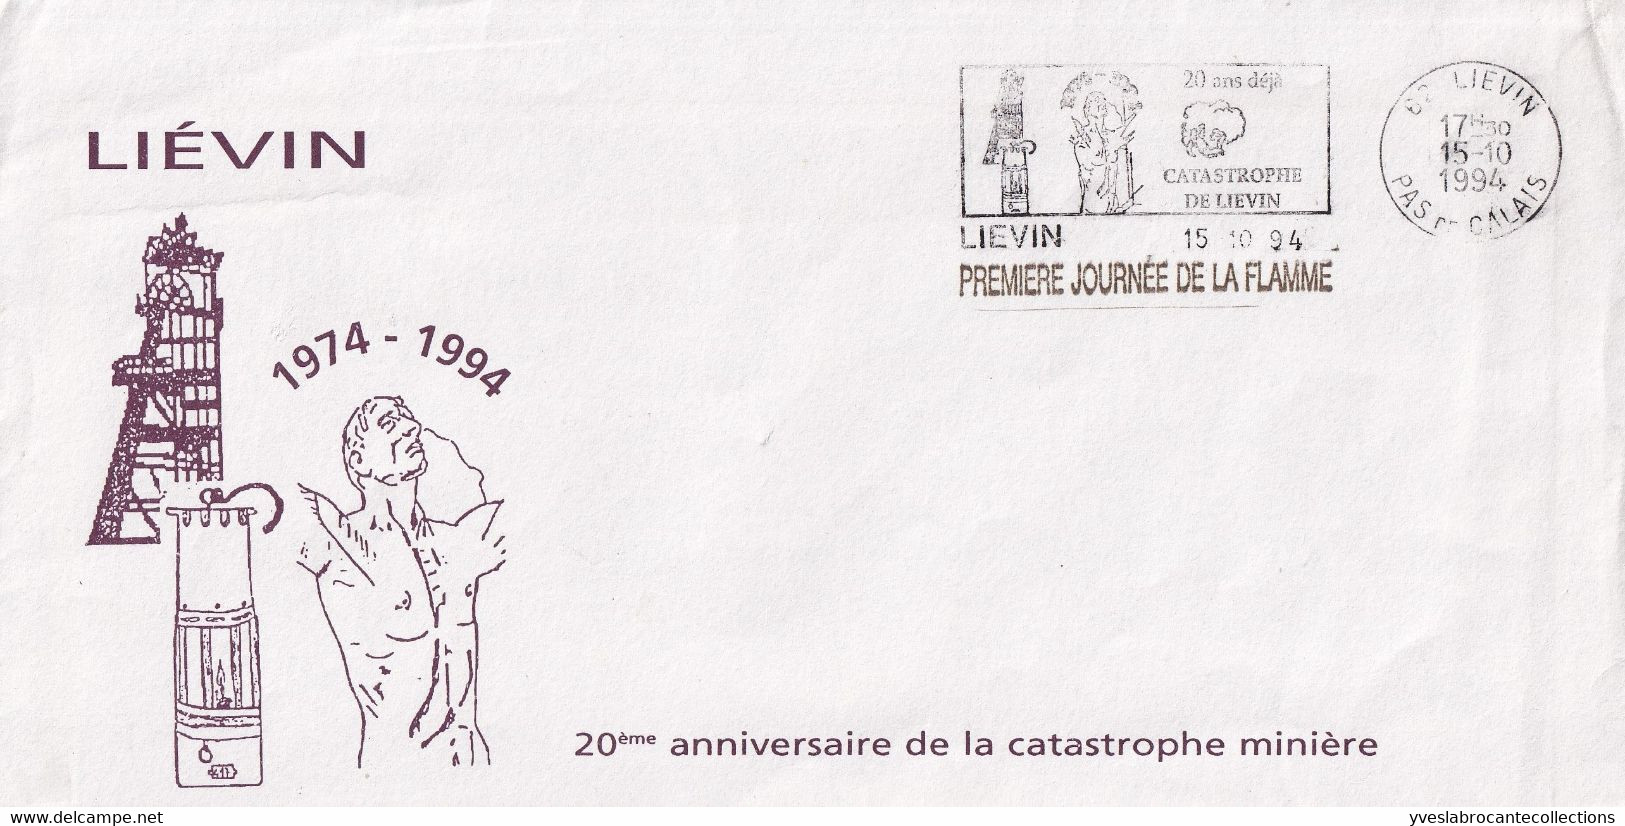 Liévin - 62 -  - Sur Enveloppe Commémorative Catastrophe Minière 1974 -  1ère Journée Flamme 20 Ans Déjà ... -15/10/94 - Mechanical Postmarks (Advertisement)